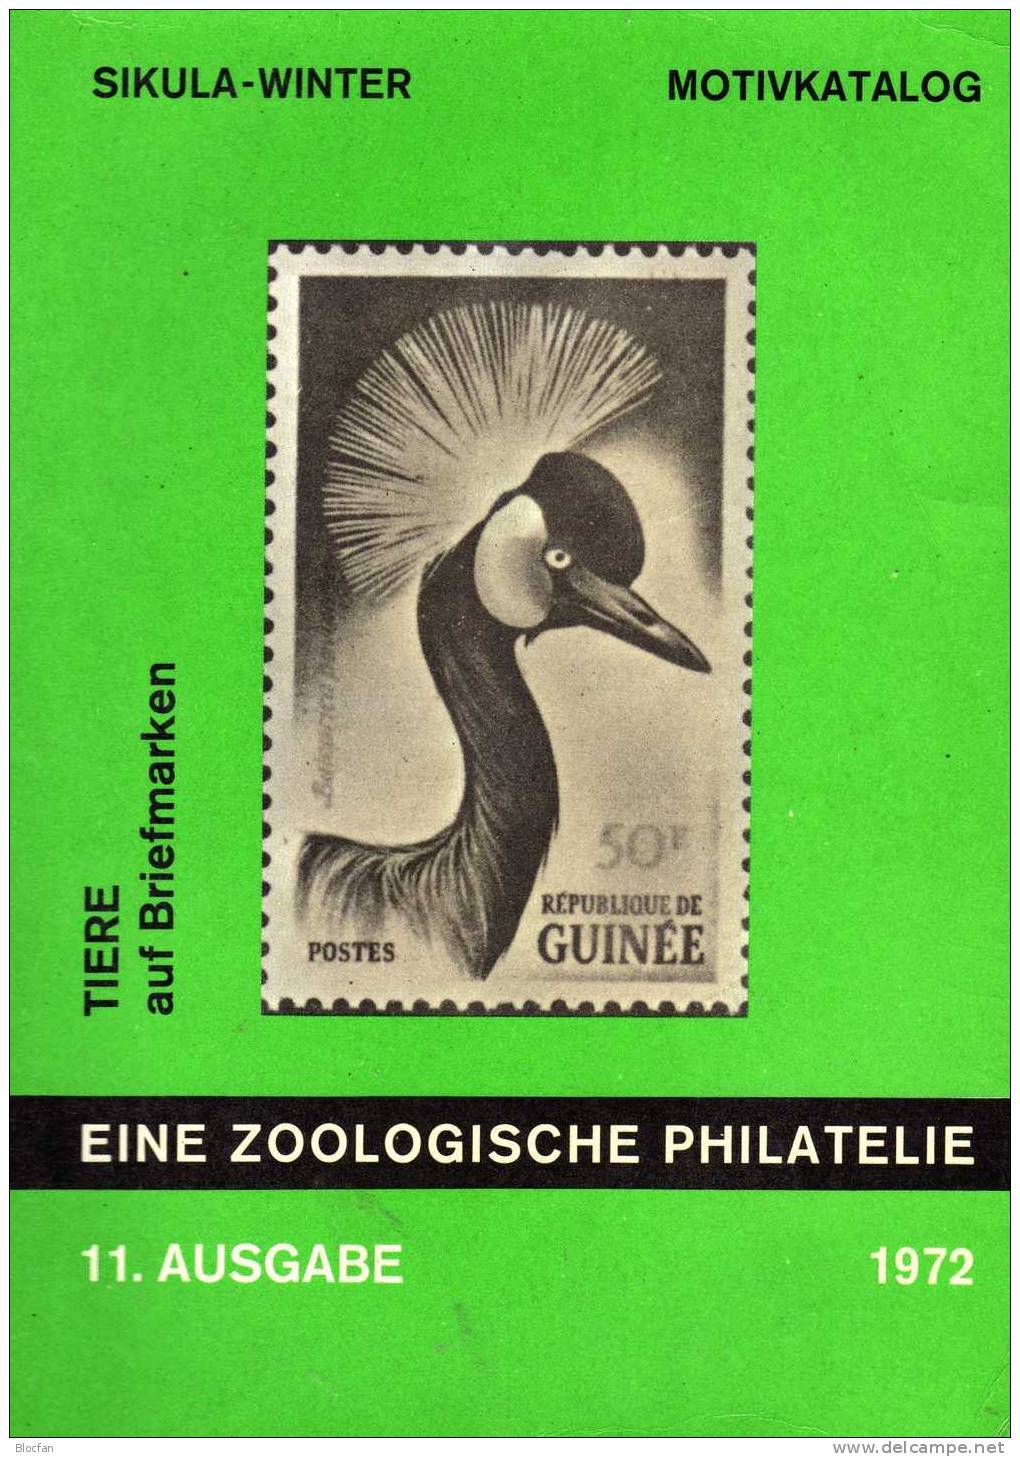 Zoo Philatelie Katalog Tiere Auf Briefmarken1972 Antiquarisch 7€ Zoologie Tierwelt Fauna Special Catalogue Of The World - Briefe U. Dokumente